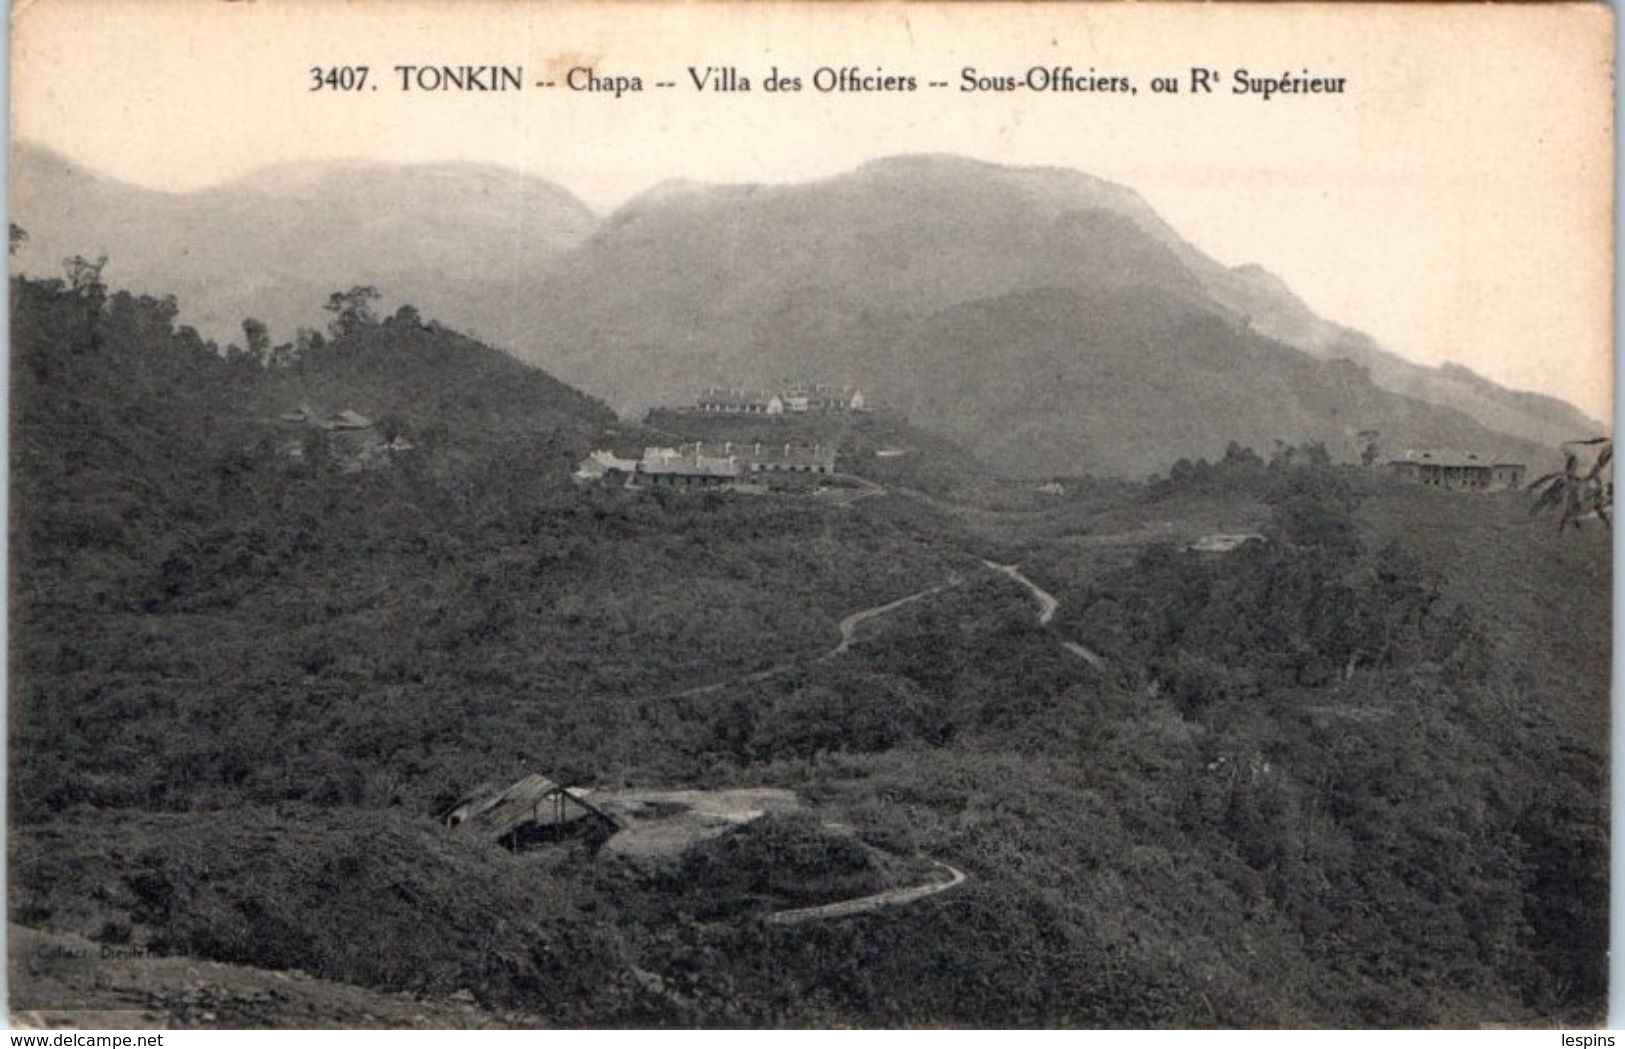 VIÊT NAM -- Tonkin -- Chapa - Villa Des Officiers - Vietnam